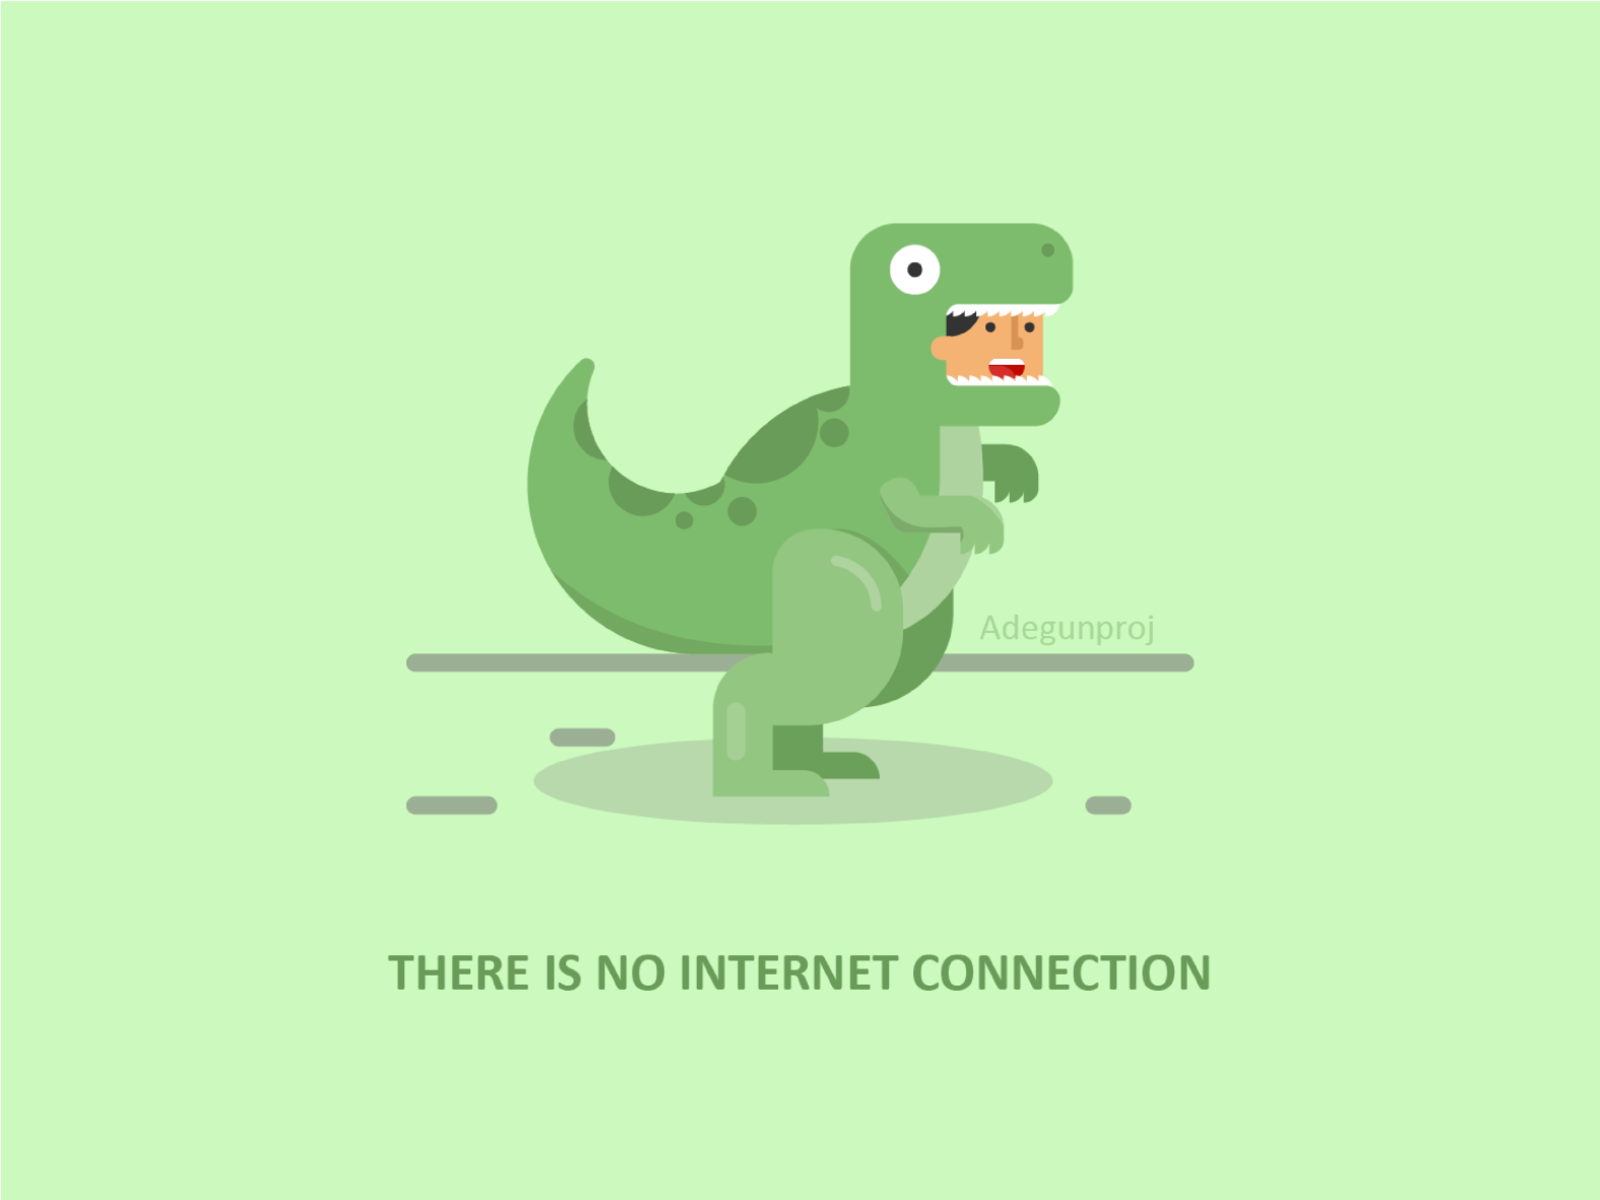 Google T-Rex